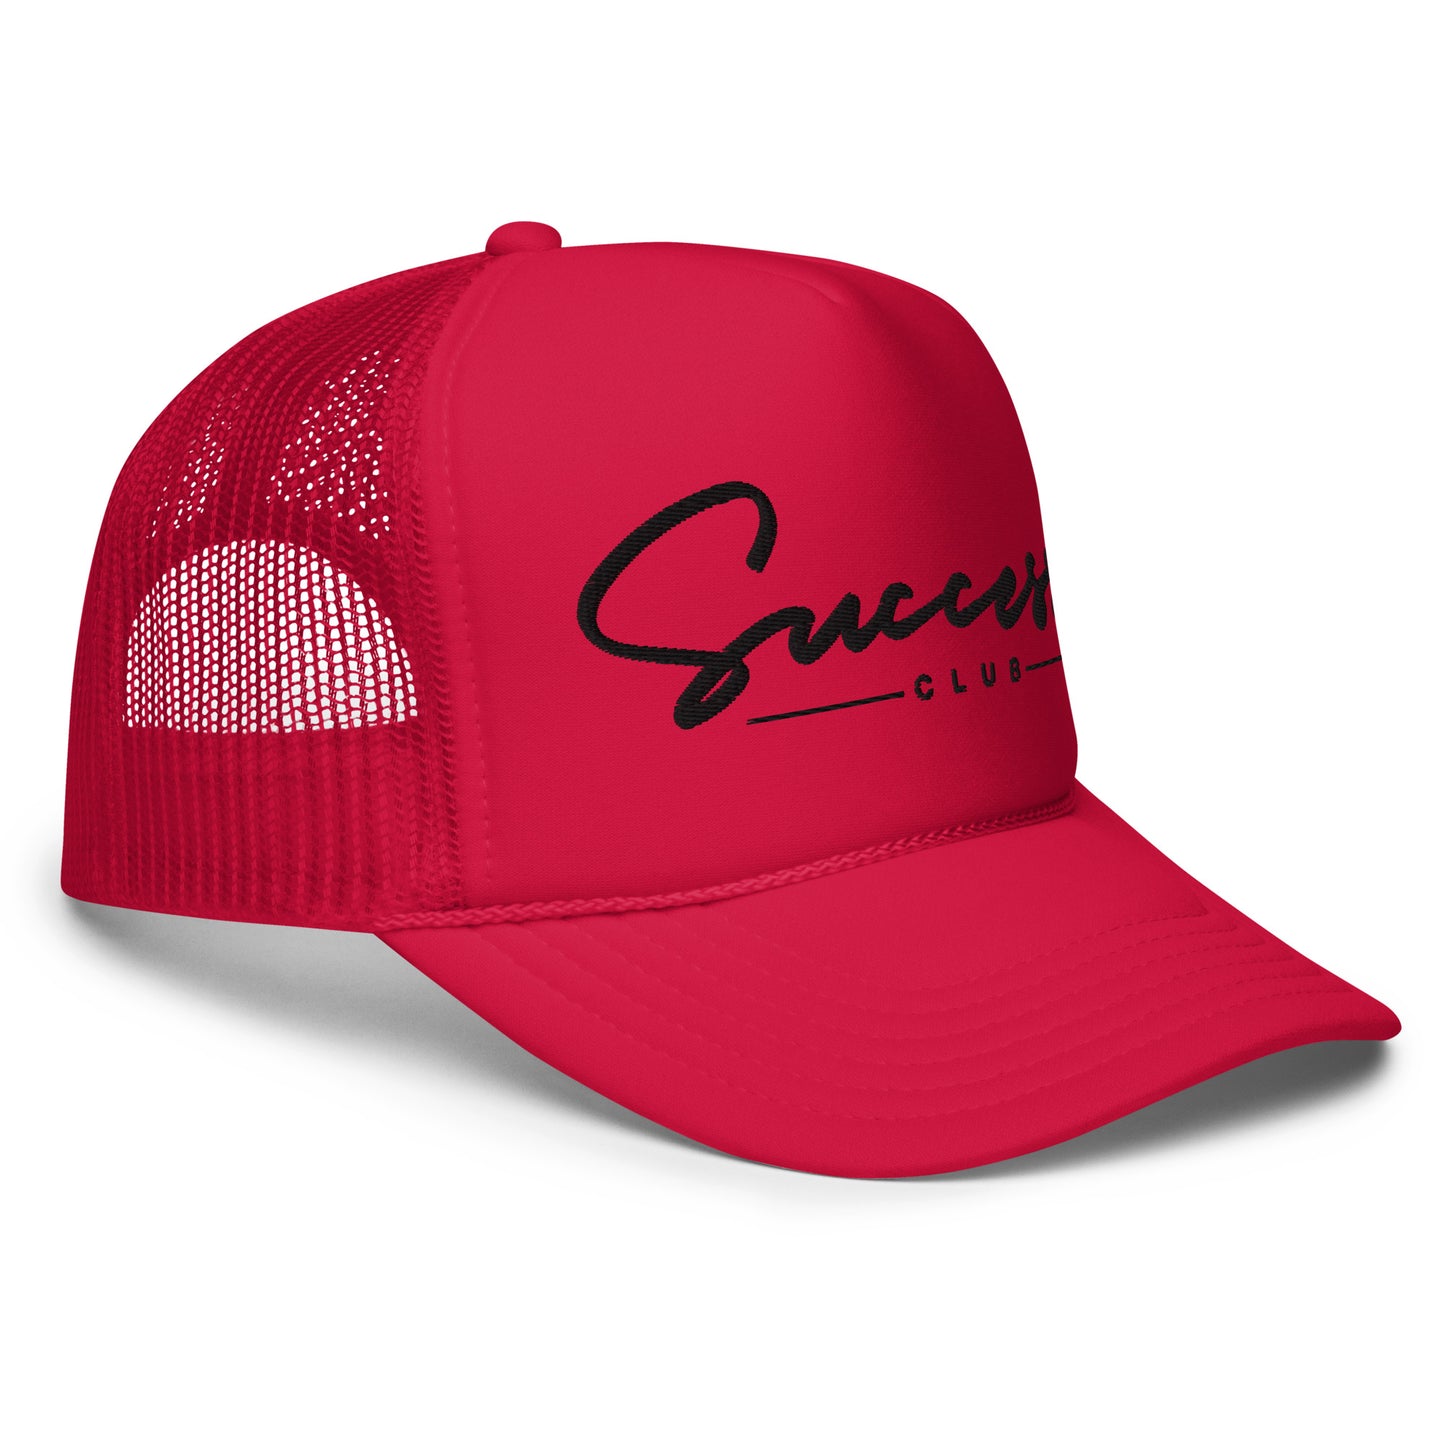 Success Club Trucker Hat